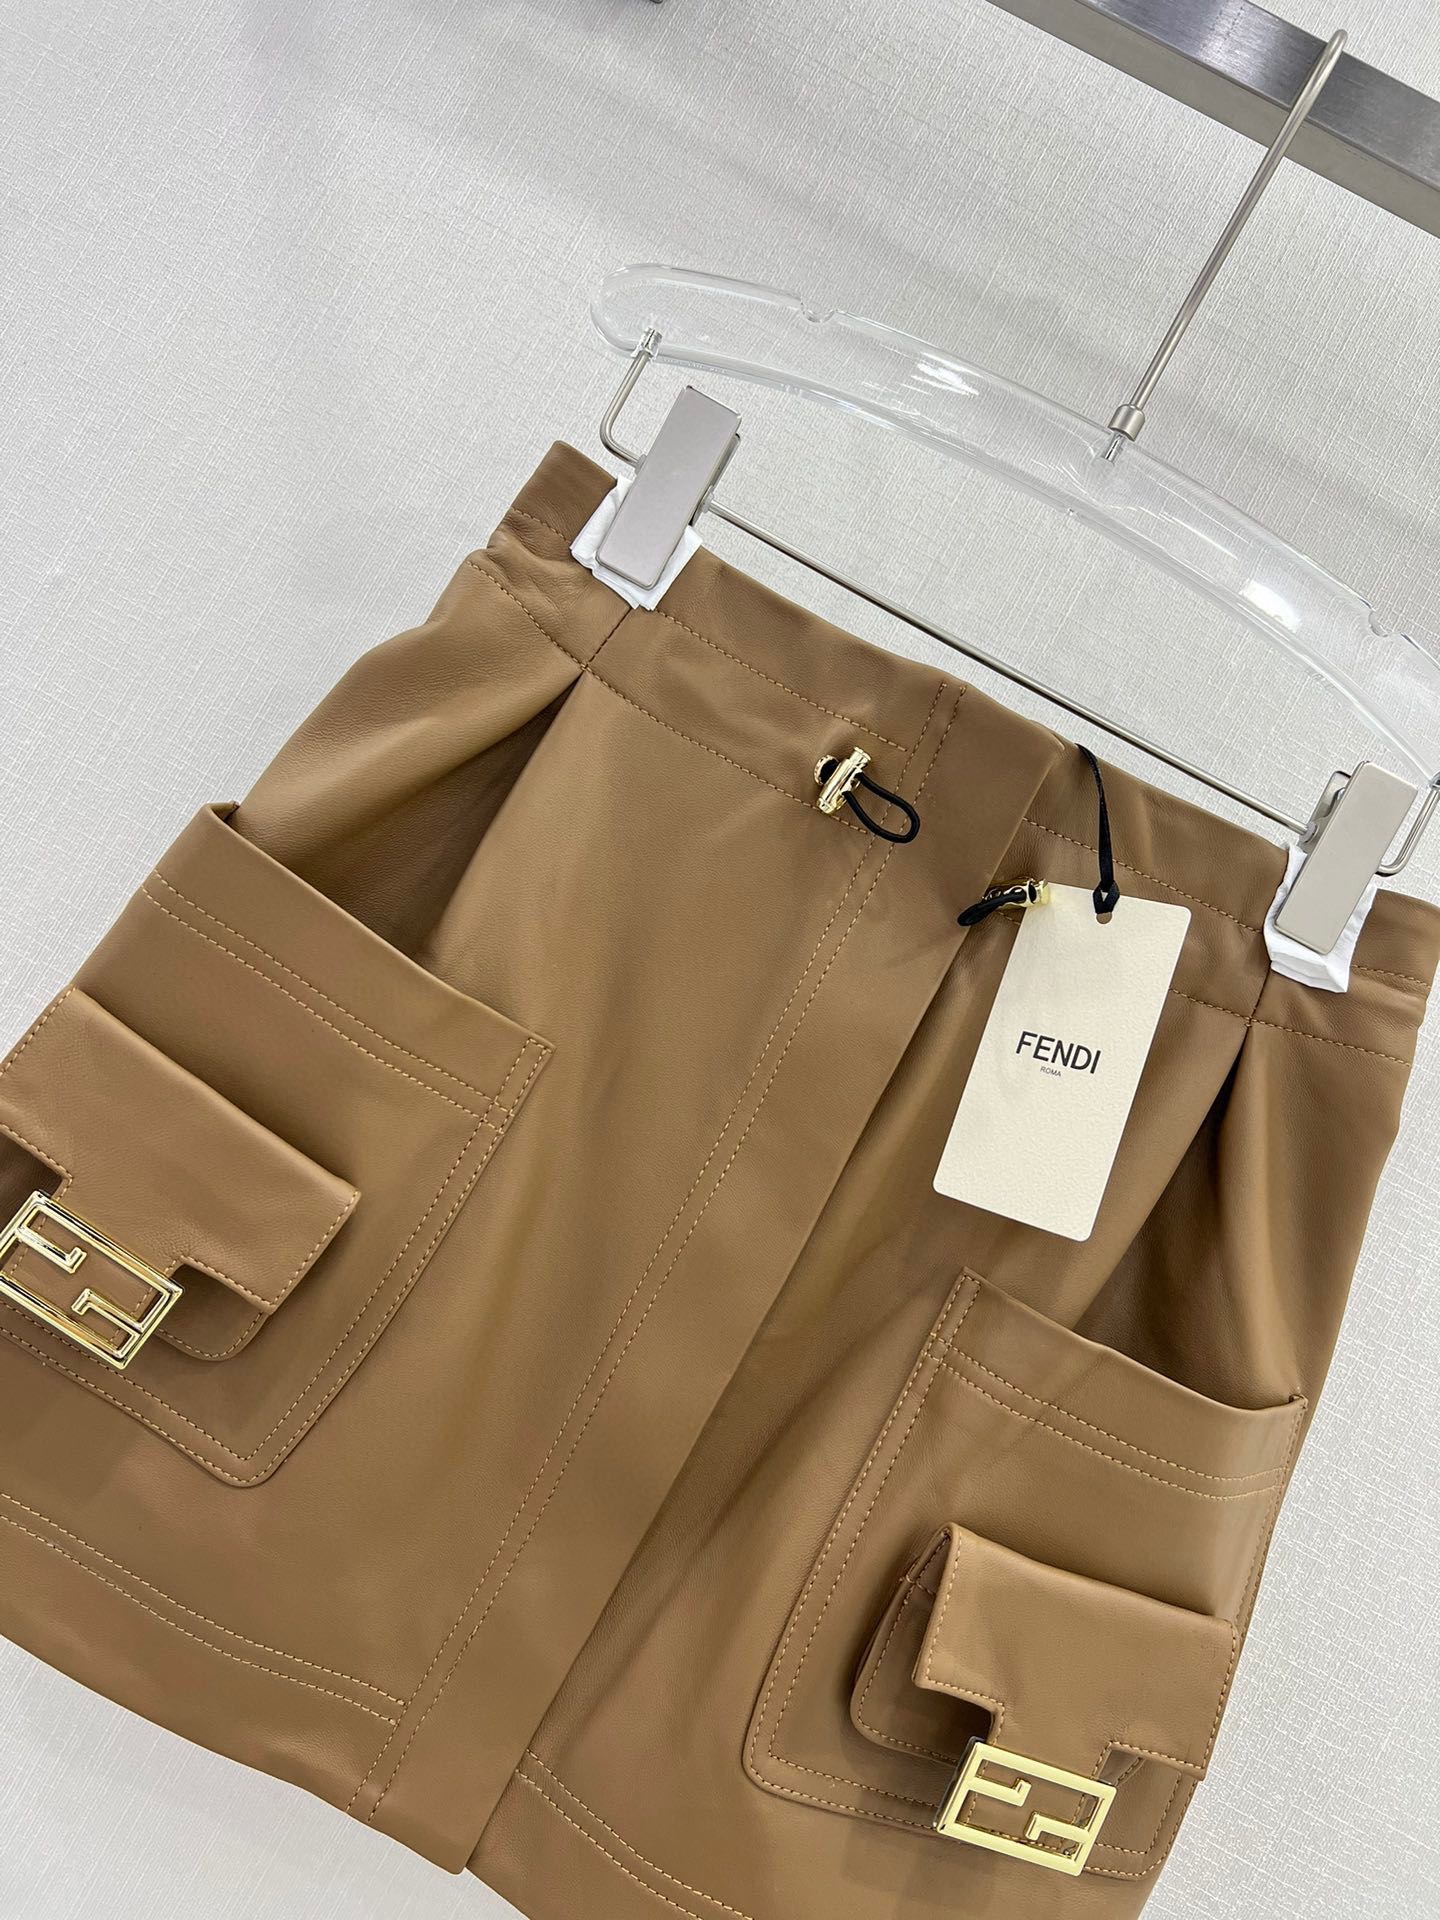 人気セール高品質フェンディ人気スカート偽物 ダブルポケットが特徴のワークデザインの羊革_3